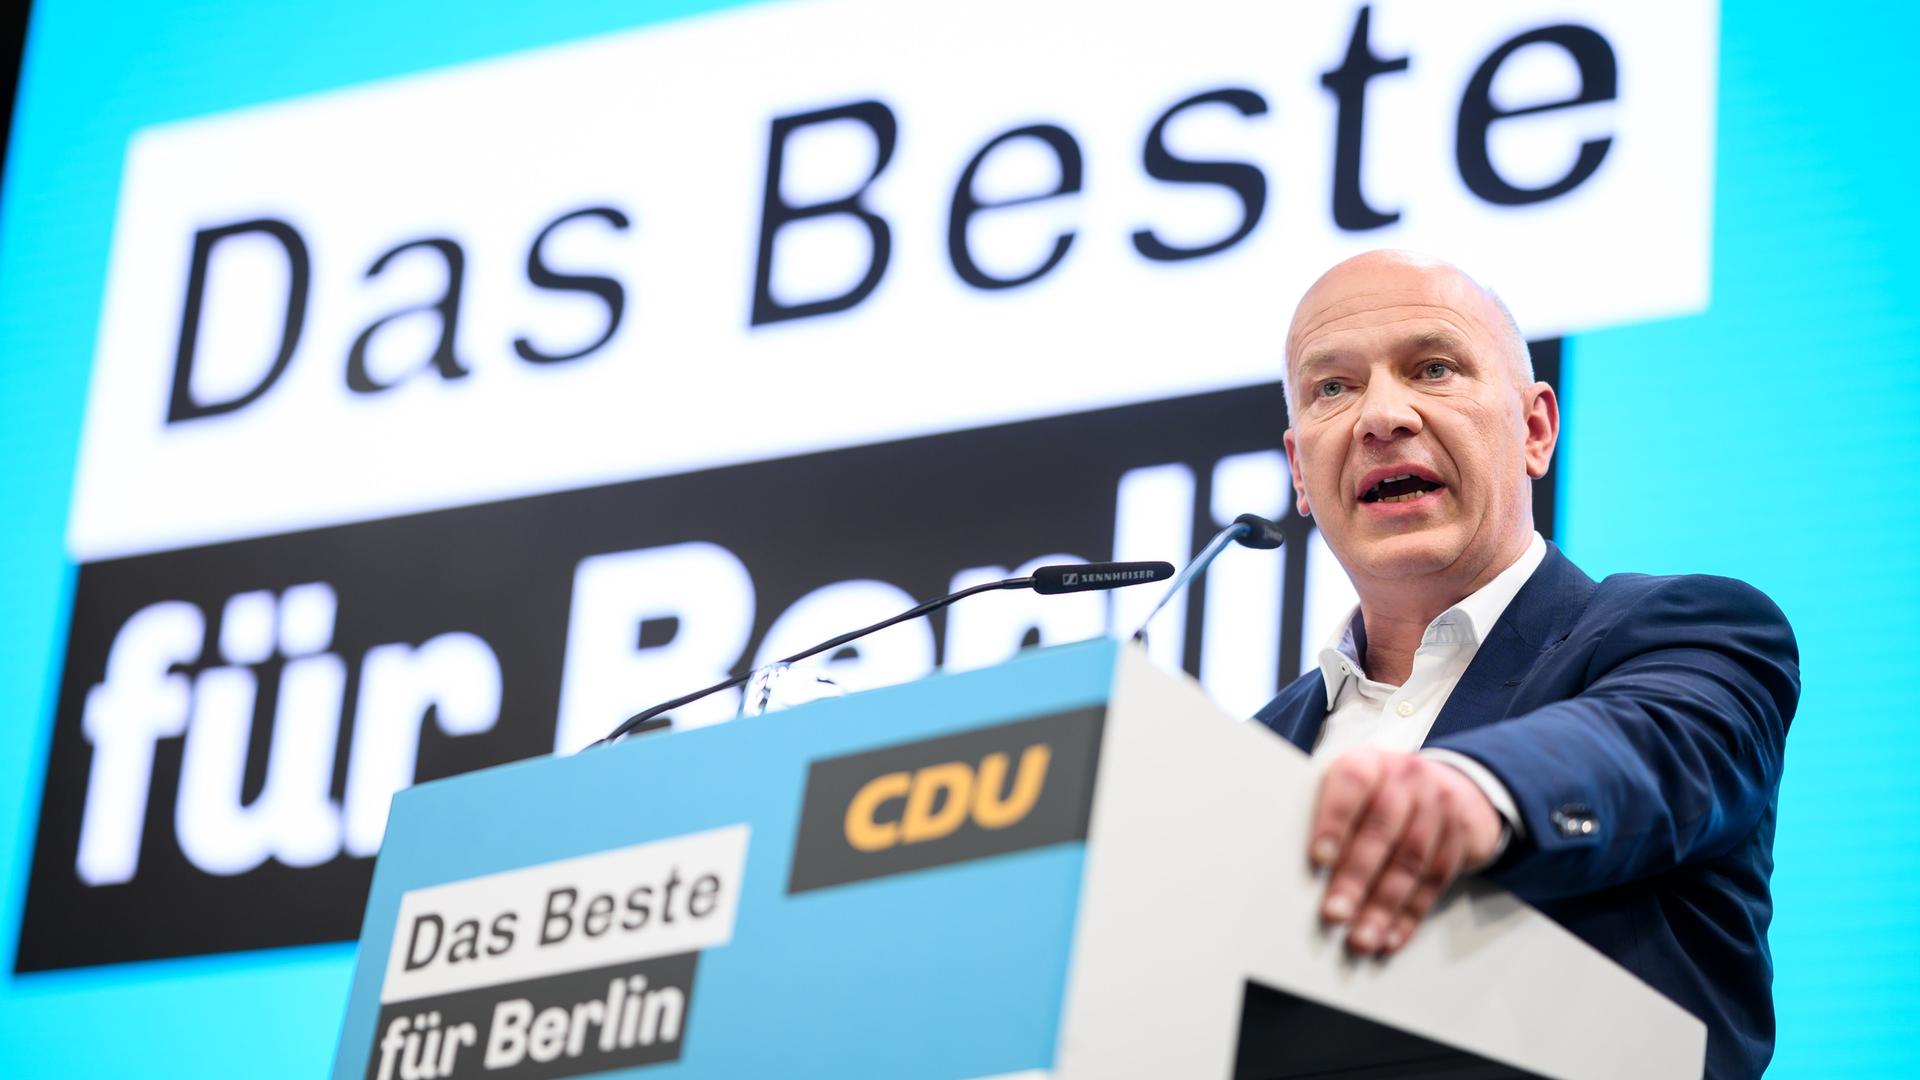 Kai Wegner (CDU), designierter Regierender Bürgermeister von Berlin, spricht beim Landesparteitag der Berliner CDU. Nach der Zustimmung der Berliner SPD zum gemeinsam ausgehandelten Koalitionsvertrag wollen die Christdemokraten bei einem Parteitag darüber entscheiden. Gibt es wie erwartet eine Mehrheit, ist der Weg frei für eine schwarz-rote Landesregierung.